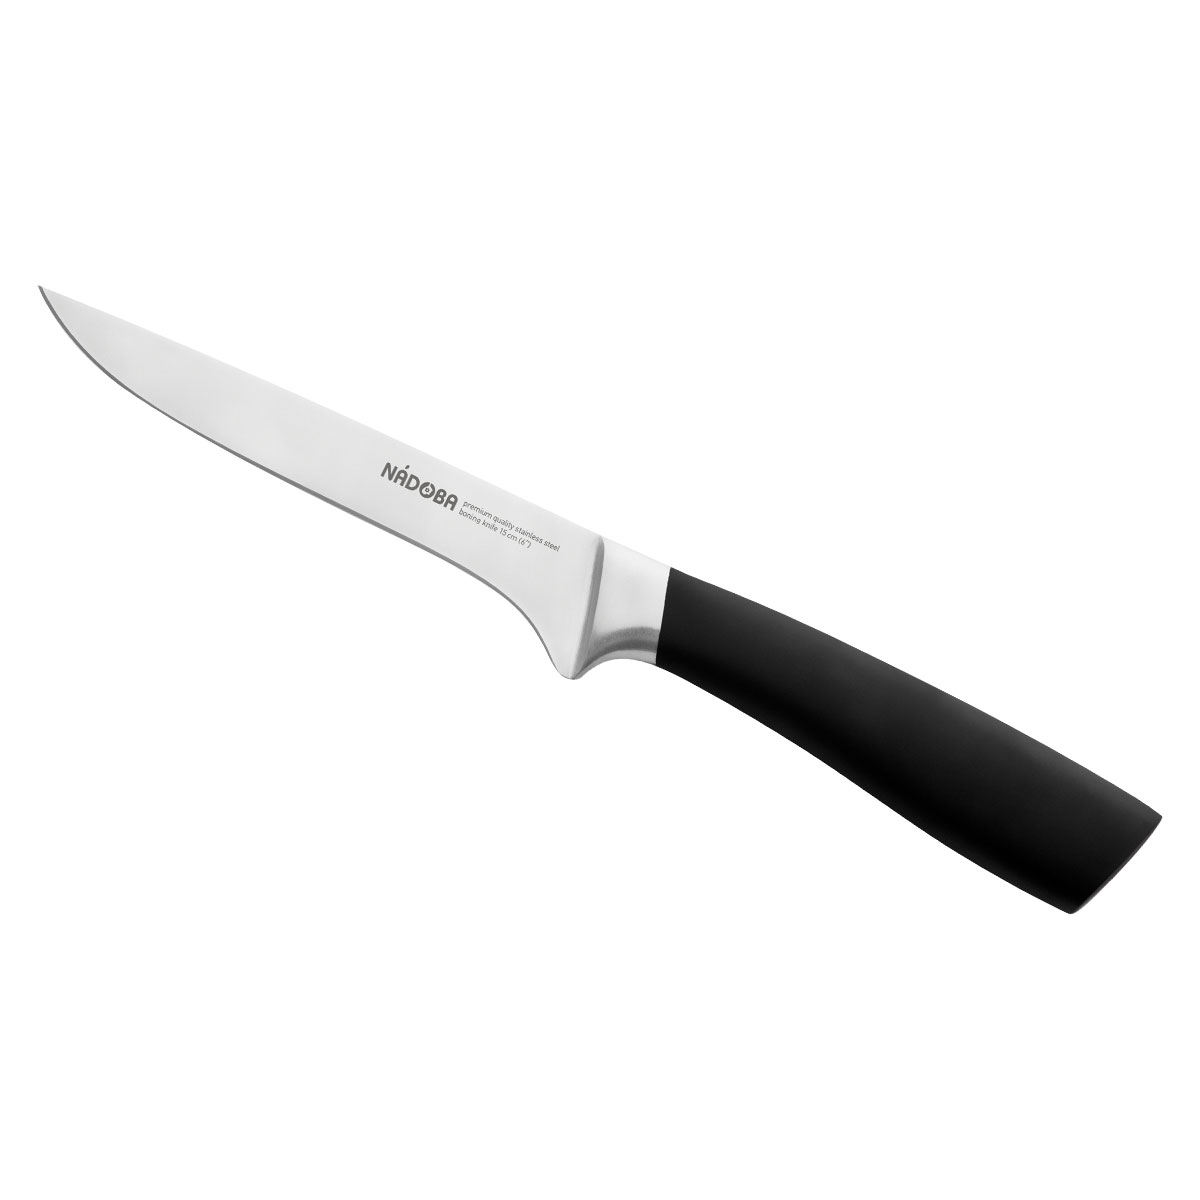 Нож Nadoba обвалочный 15 см нож обвалочный с изогнутым лезвием 15 см 8321t64 atlantic chef